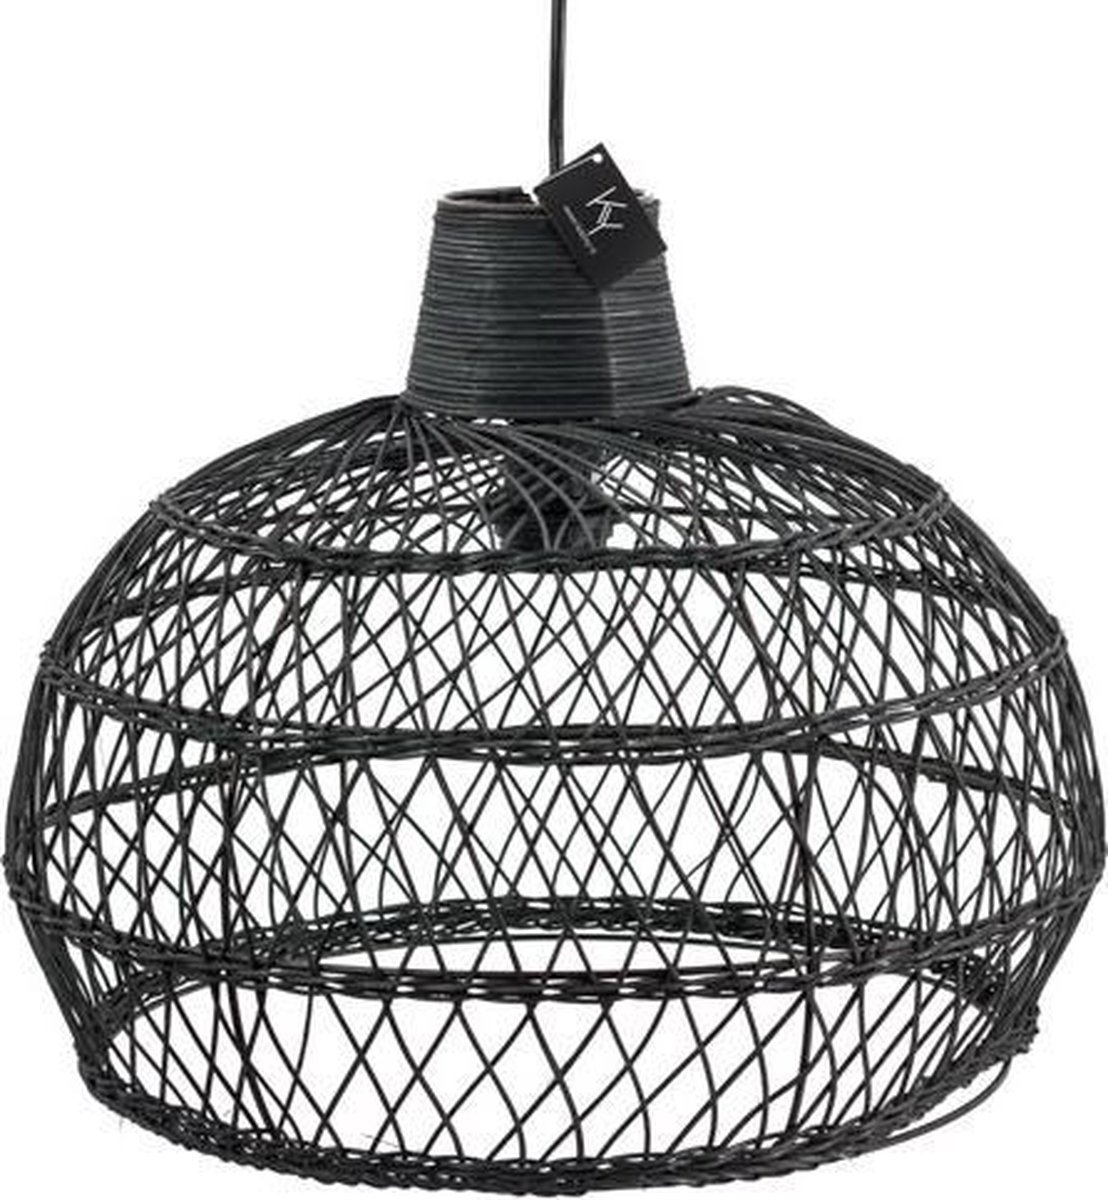 Hanglamp Slaapkamer - Hanglamp - Slaapkamer Lamp - Kinderkamer Lamp - Kinderkamer - Zwart - 41 cm breed